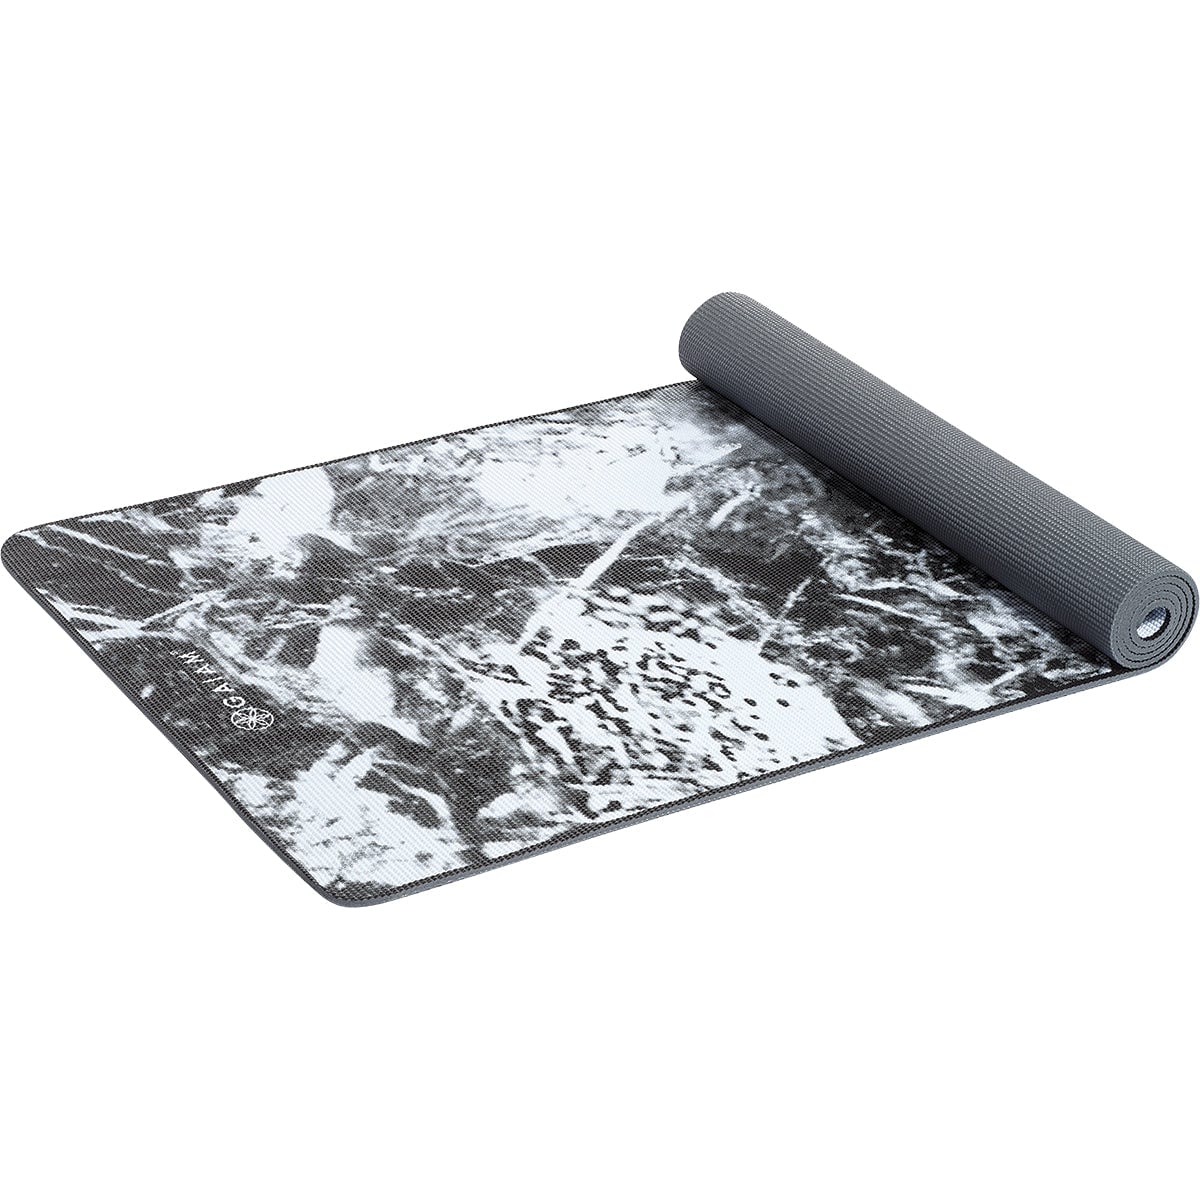 Gaiam Premium Support Yoga Mat 6mm Dark Marble 61cm x 173cm